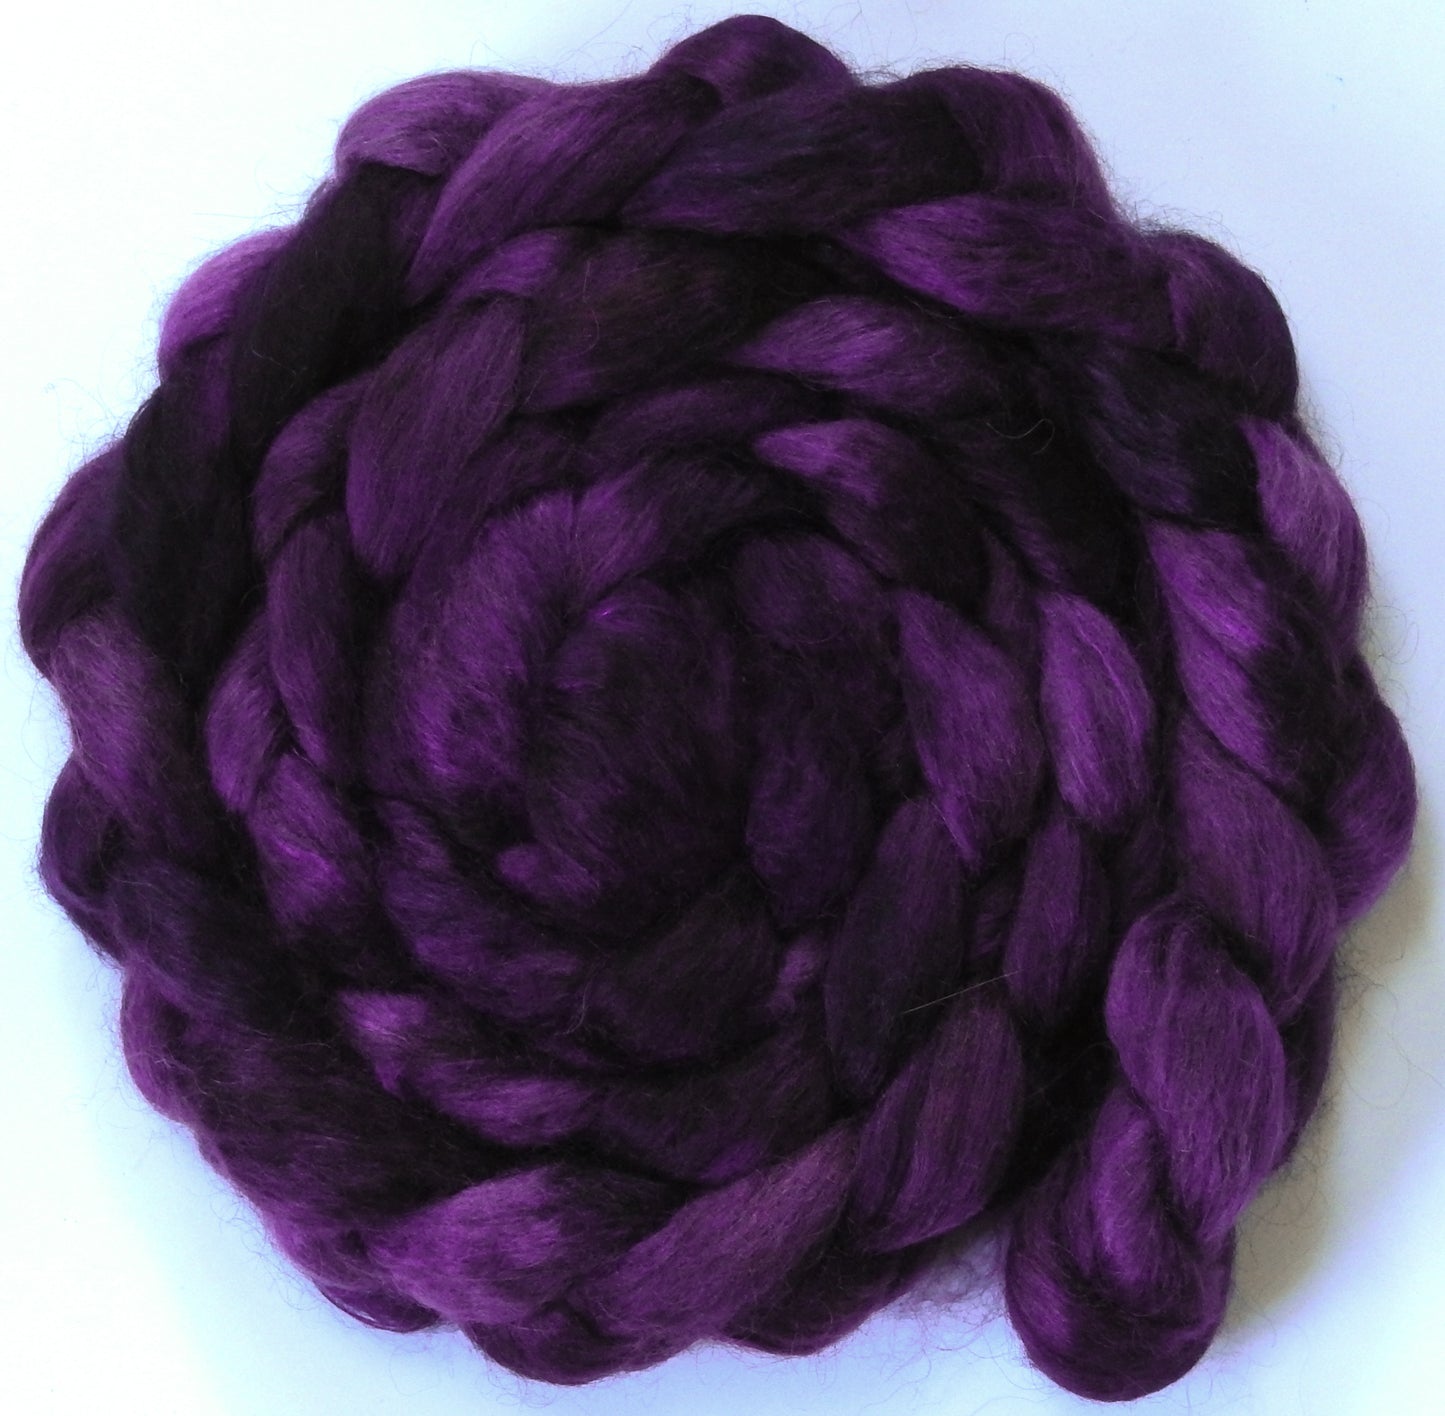 Elderberry (5.8 oz) - Batt in a Braid #52- Wensleydale/ Mulberry silk/ Polwarth (60/25/15)